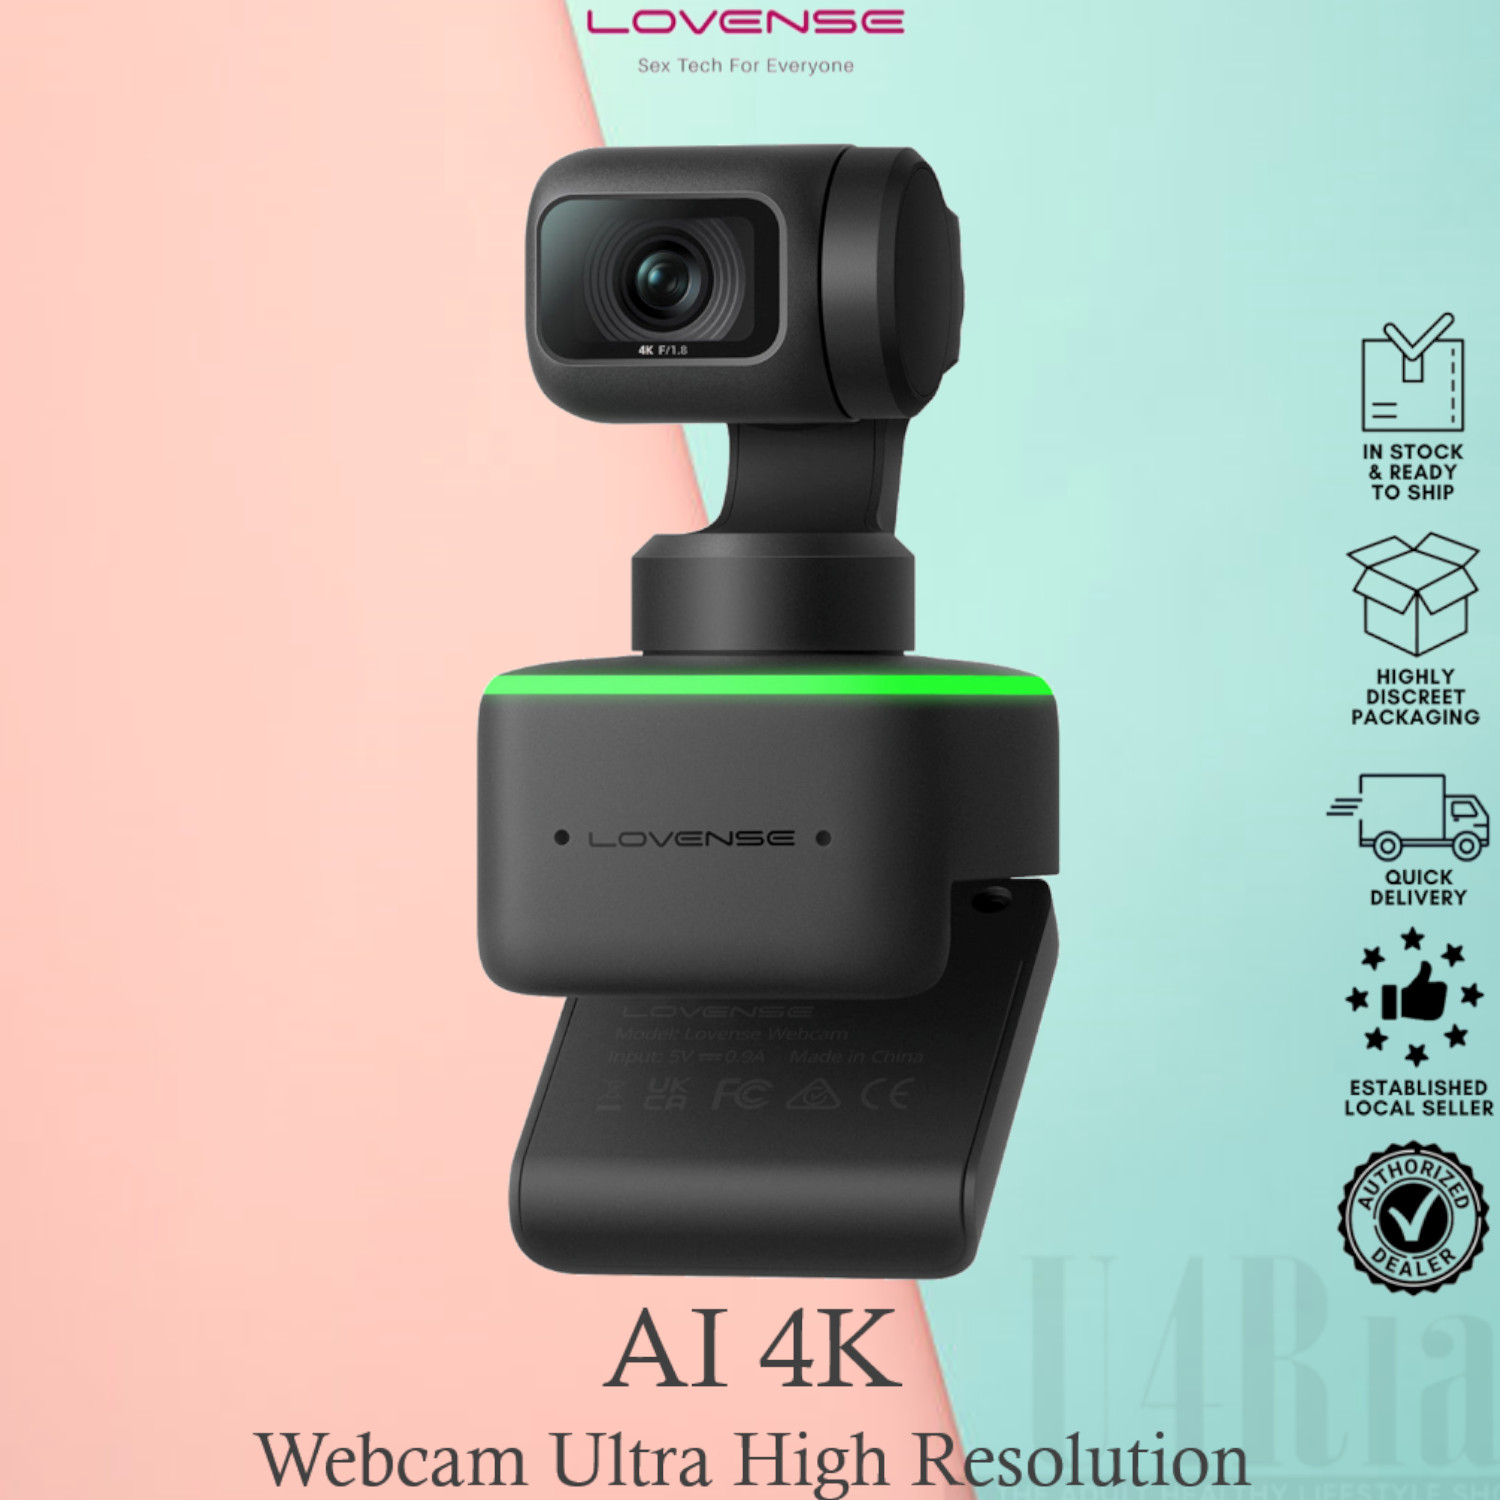 Webcam lovense